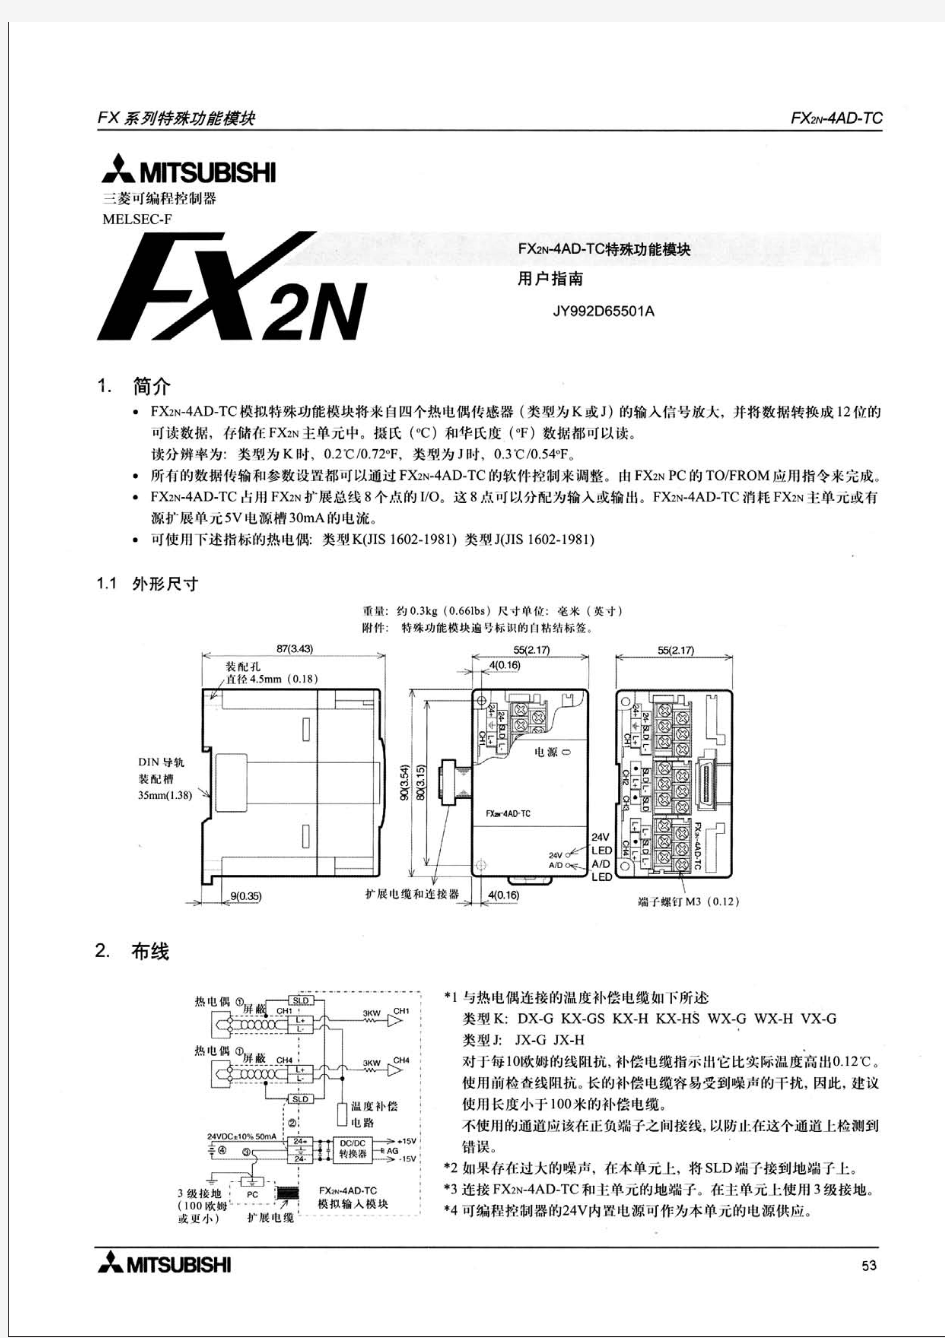 FX2N-4AD-TC用户指南